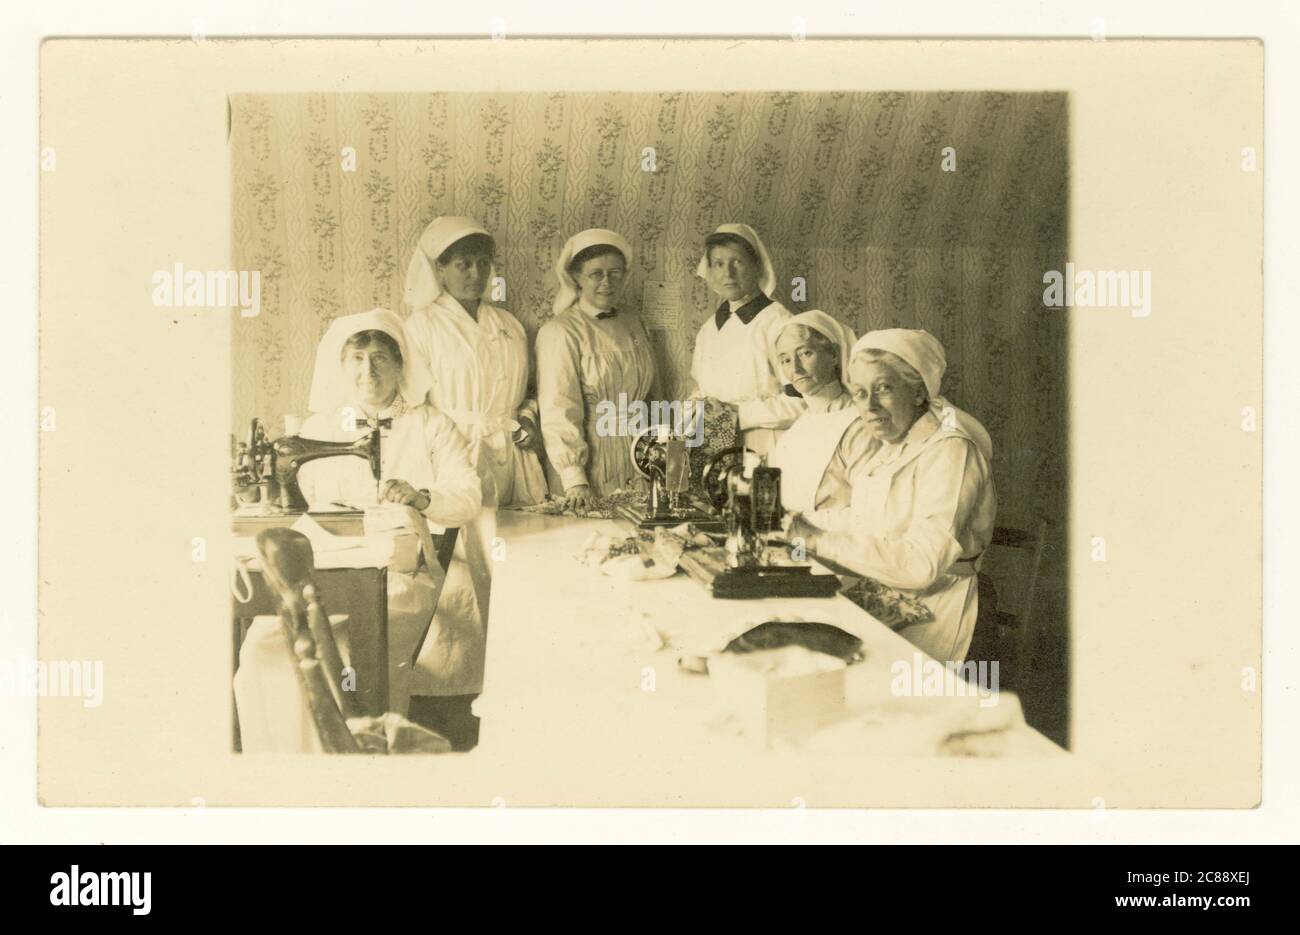 Carte postale originale rare datant de WW1 ans d'un groupe d'infirmières qui font / coudre des bandages ou des pansements, Royaume-Uni vers 1914-1918 Banque D'Images